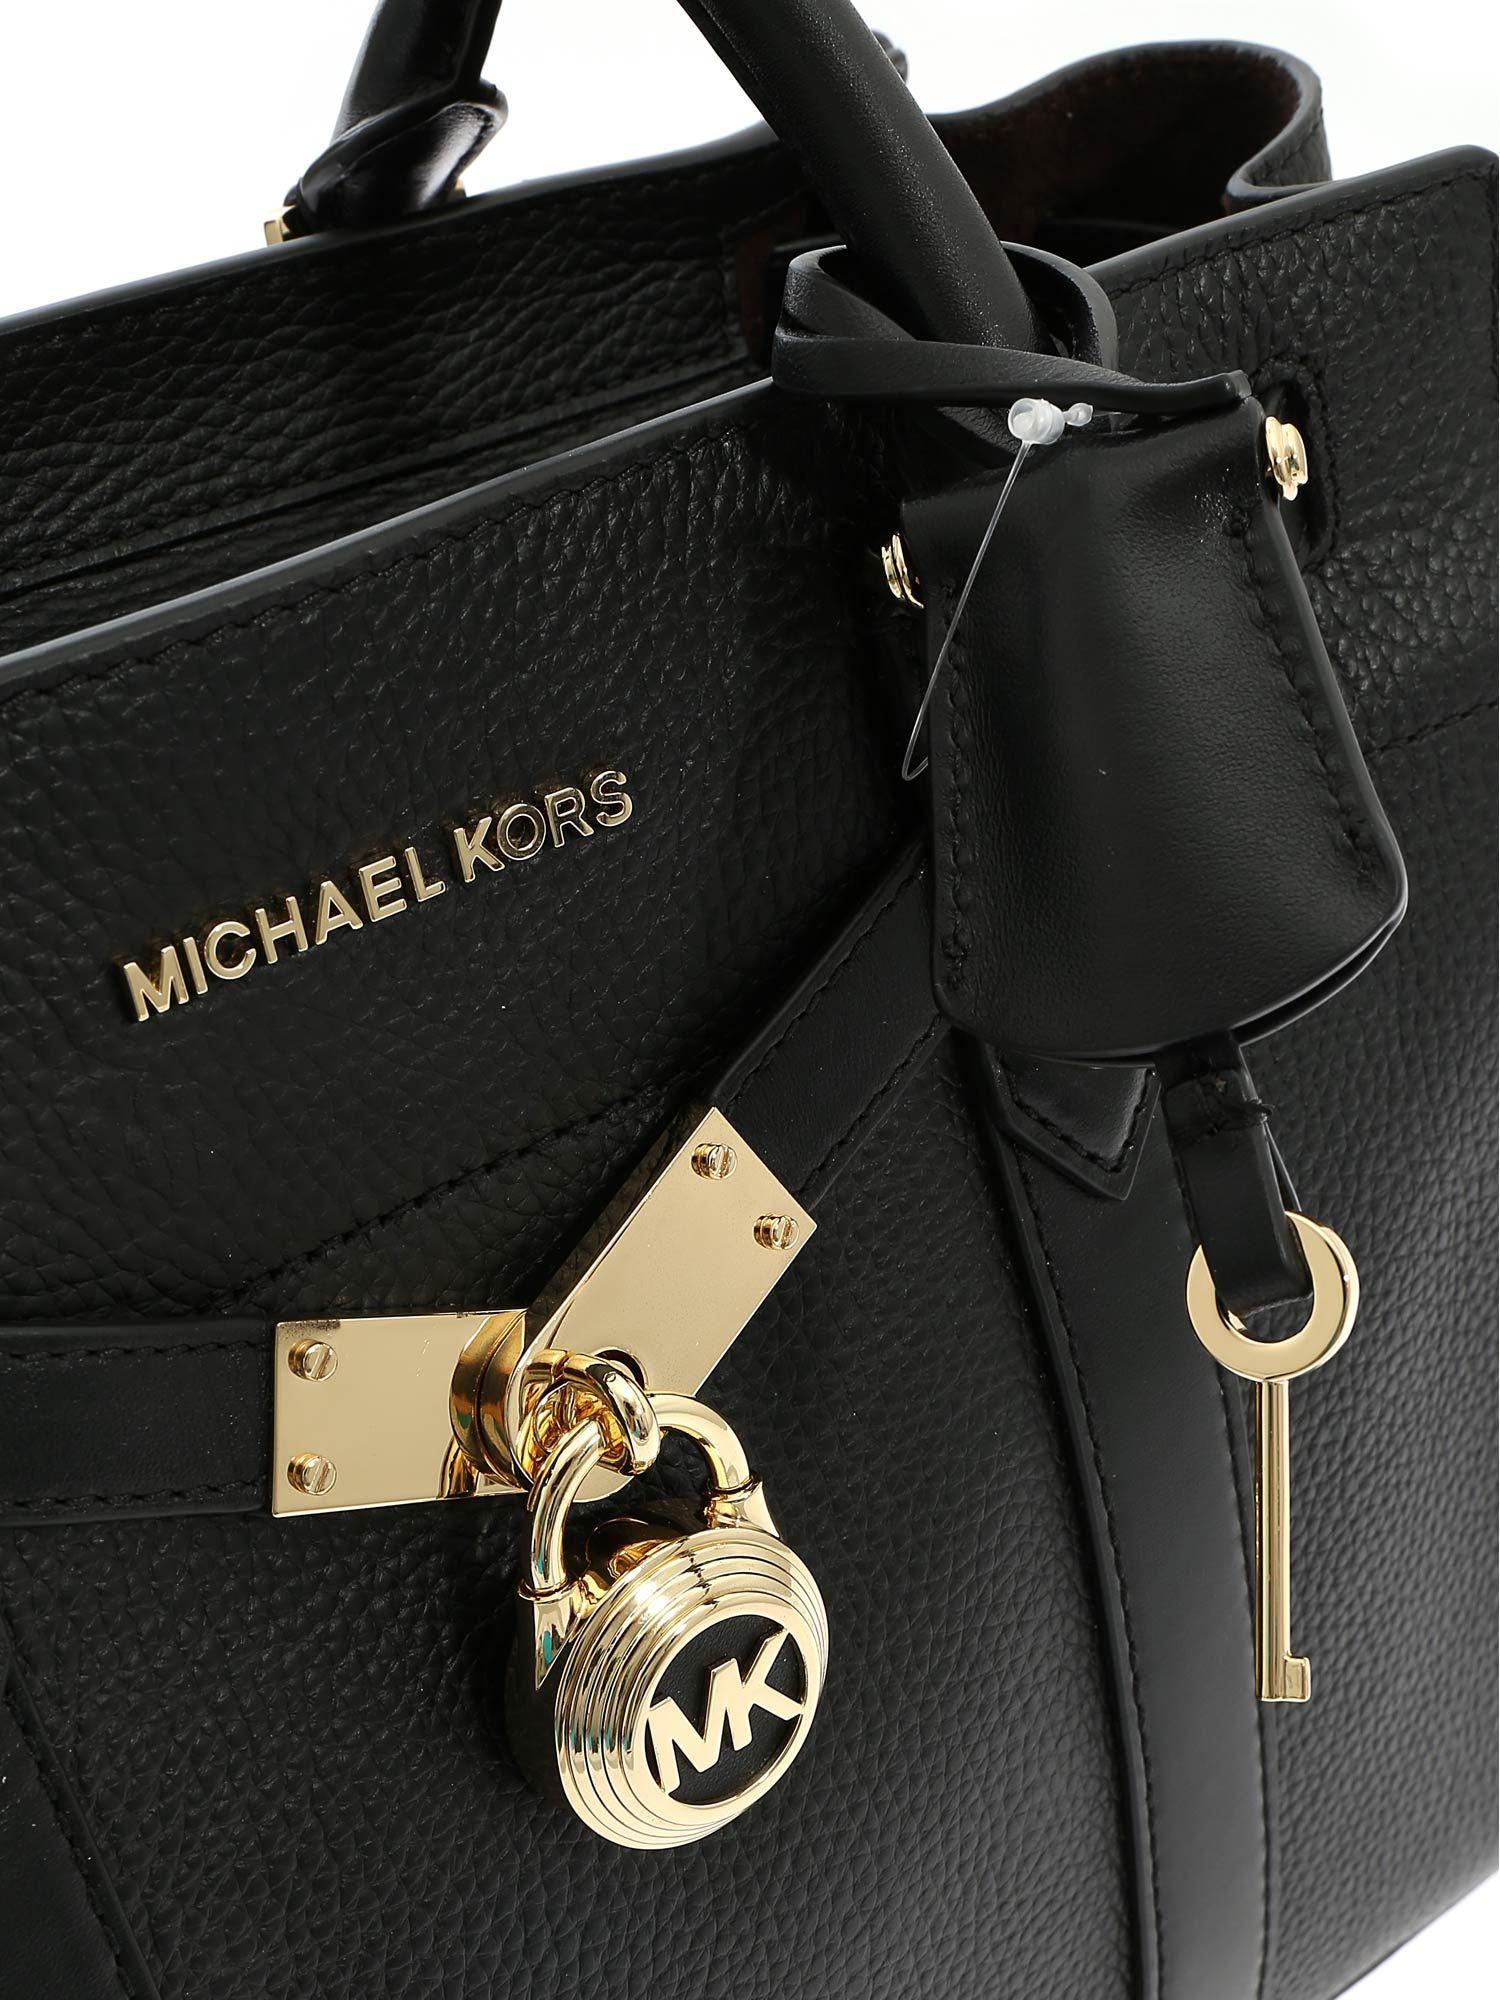 Michael Kors Hamilton Nouveau Large Handbag In Black Leather - Lyst